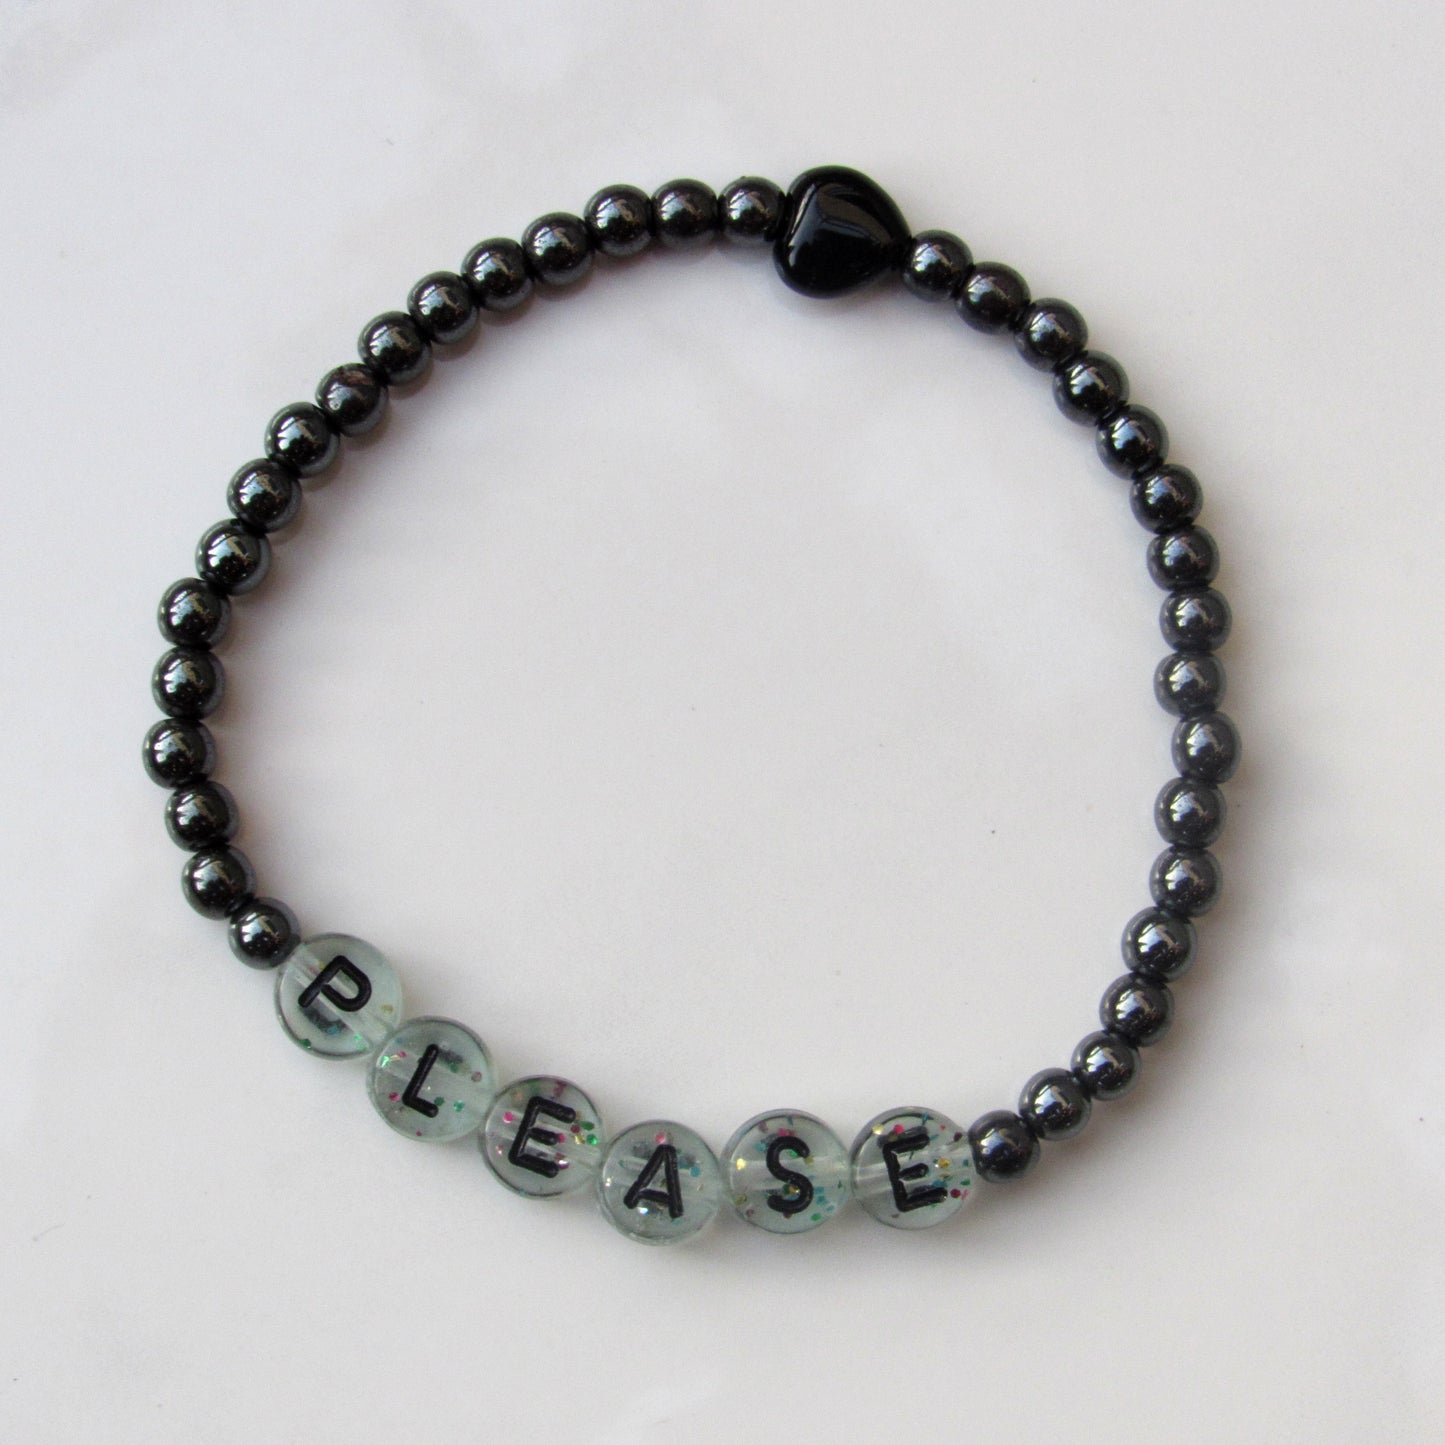 Black Hematite and Onyx gemstone Heart “BITCH PLEASE” stretch bracelet